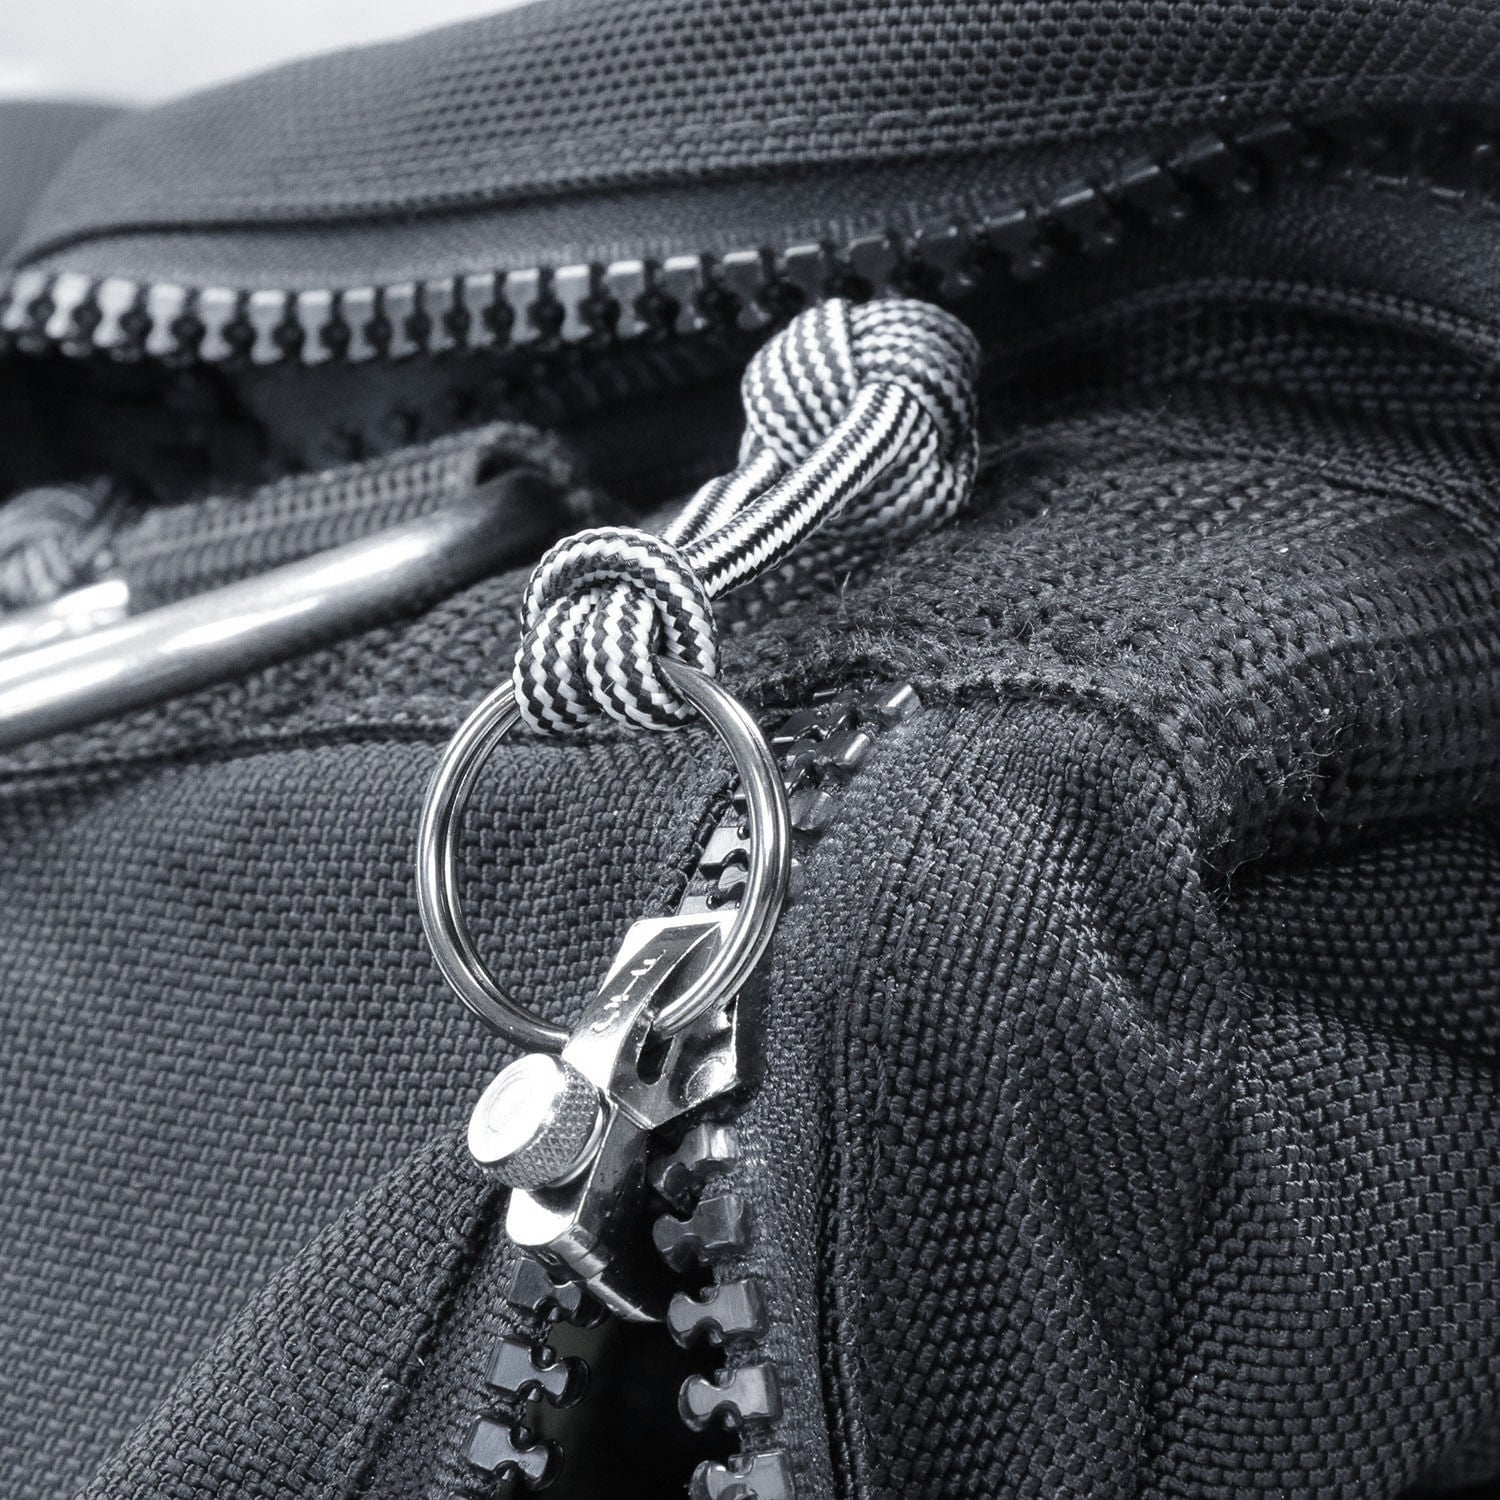 FixnZip zipper replacement on #10 YKK Chain Zipper